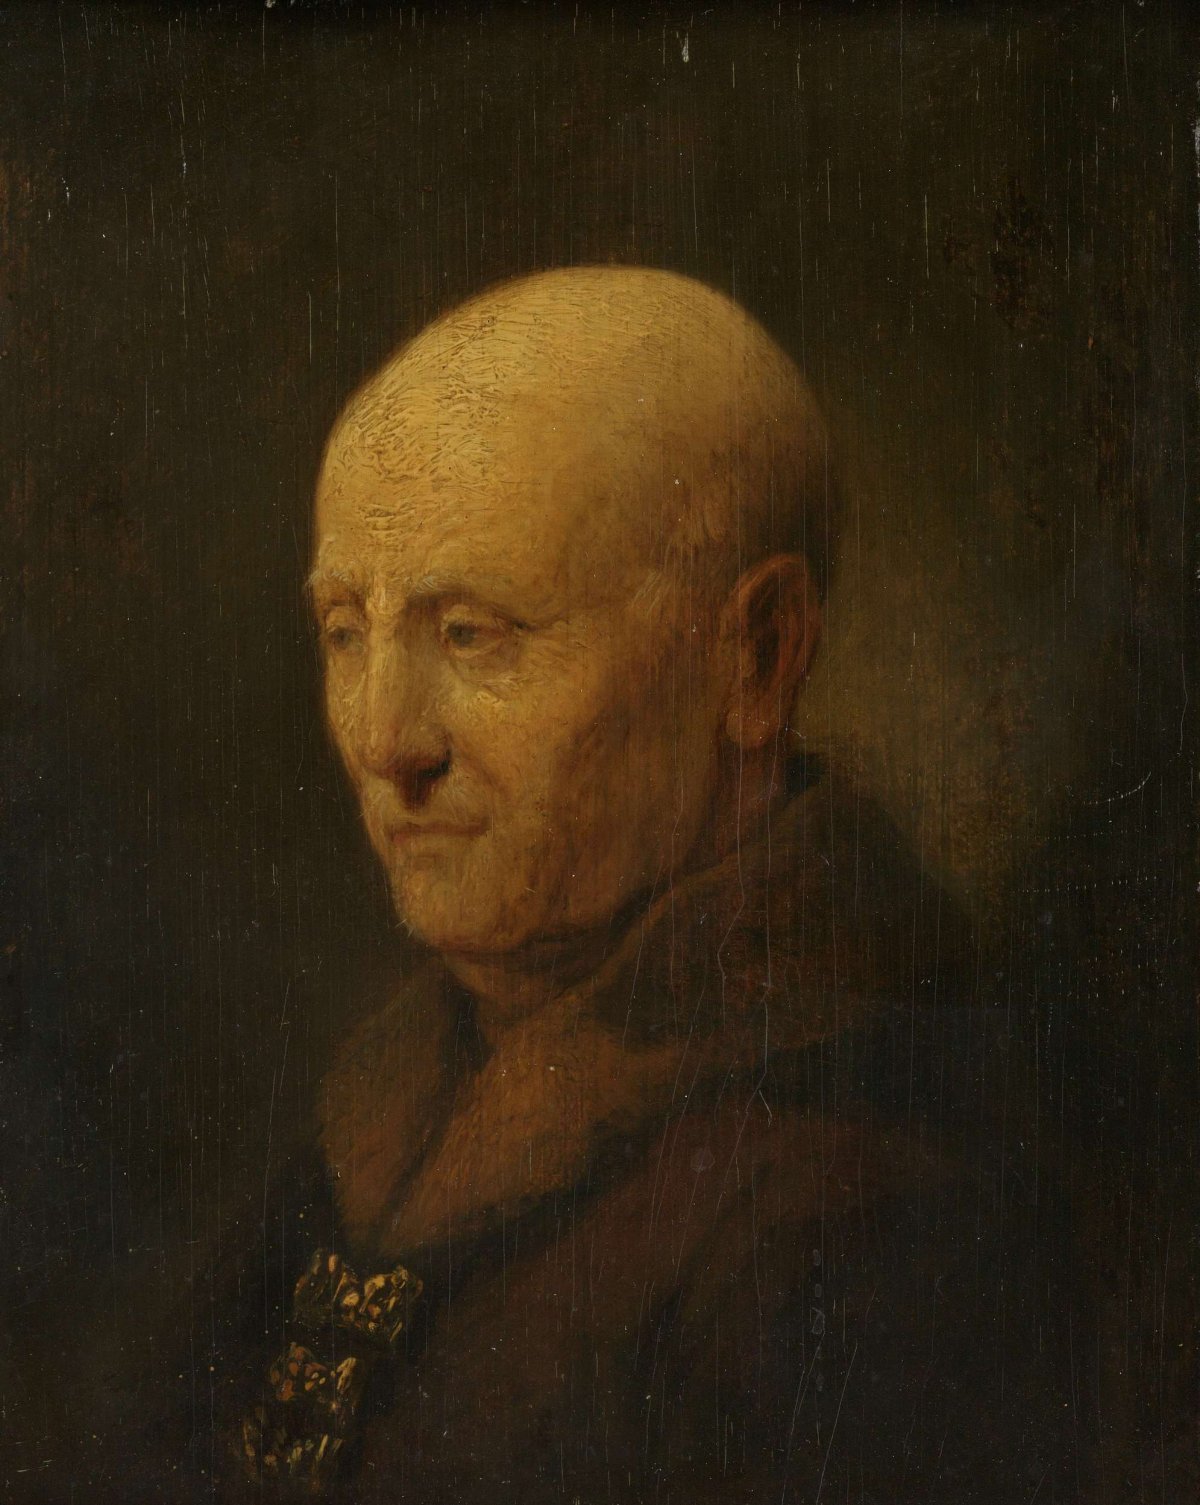 Portrait of a man, perhaps Rembrandt's father, Harmen Gerritsz van Rijn, Rembrandt van Rijn, 1730 - 1774